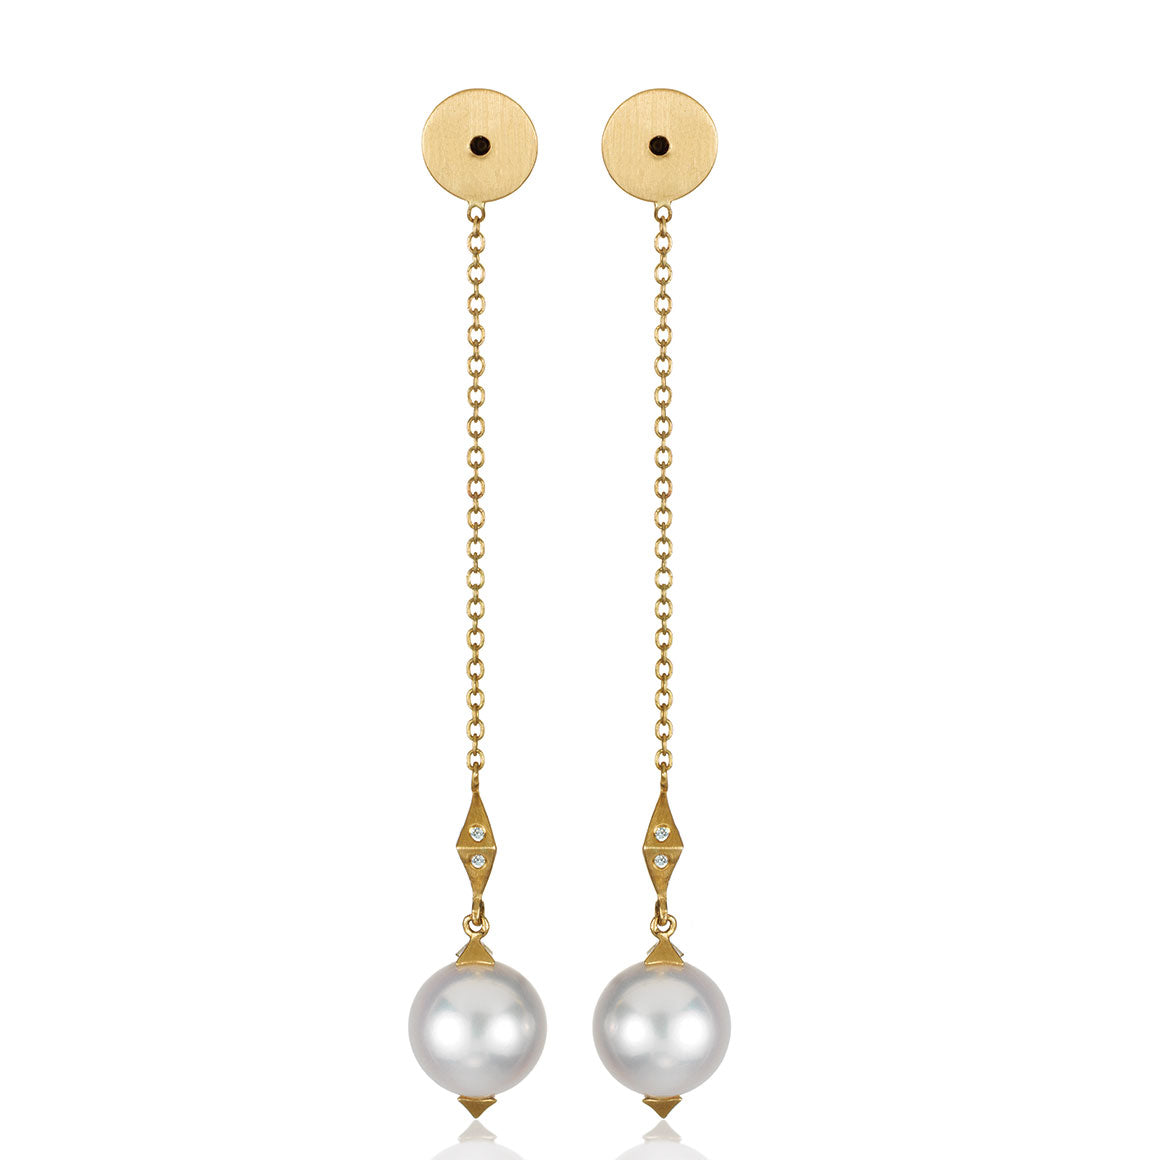 White Fresh Water pearl earrings on drop chain ear backs – Anahita Jewelry